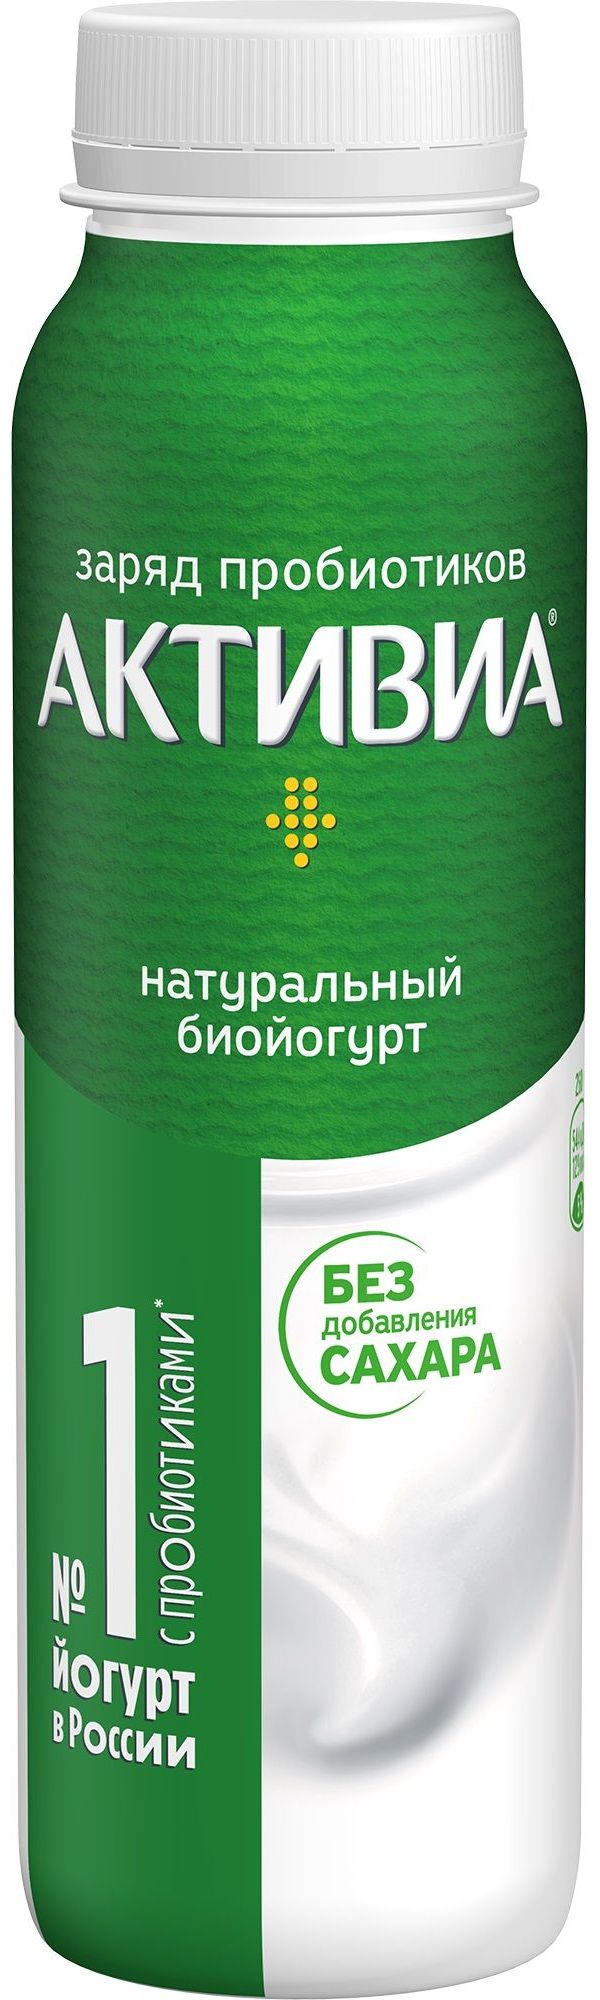 Питьевой йогурт Активиа натуральный 1,8% БЗМЖ 260 мл